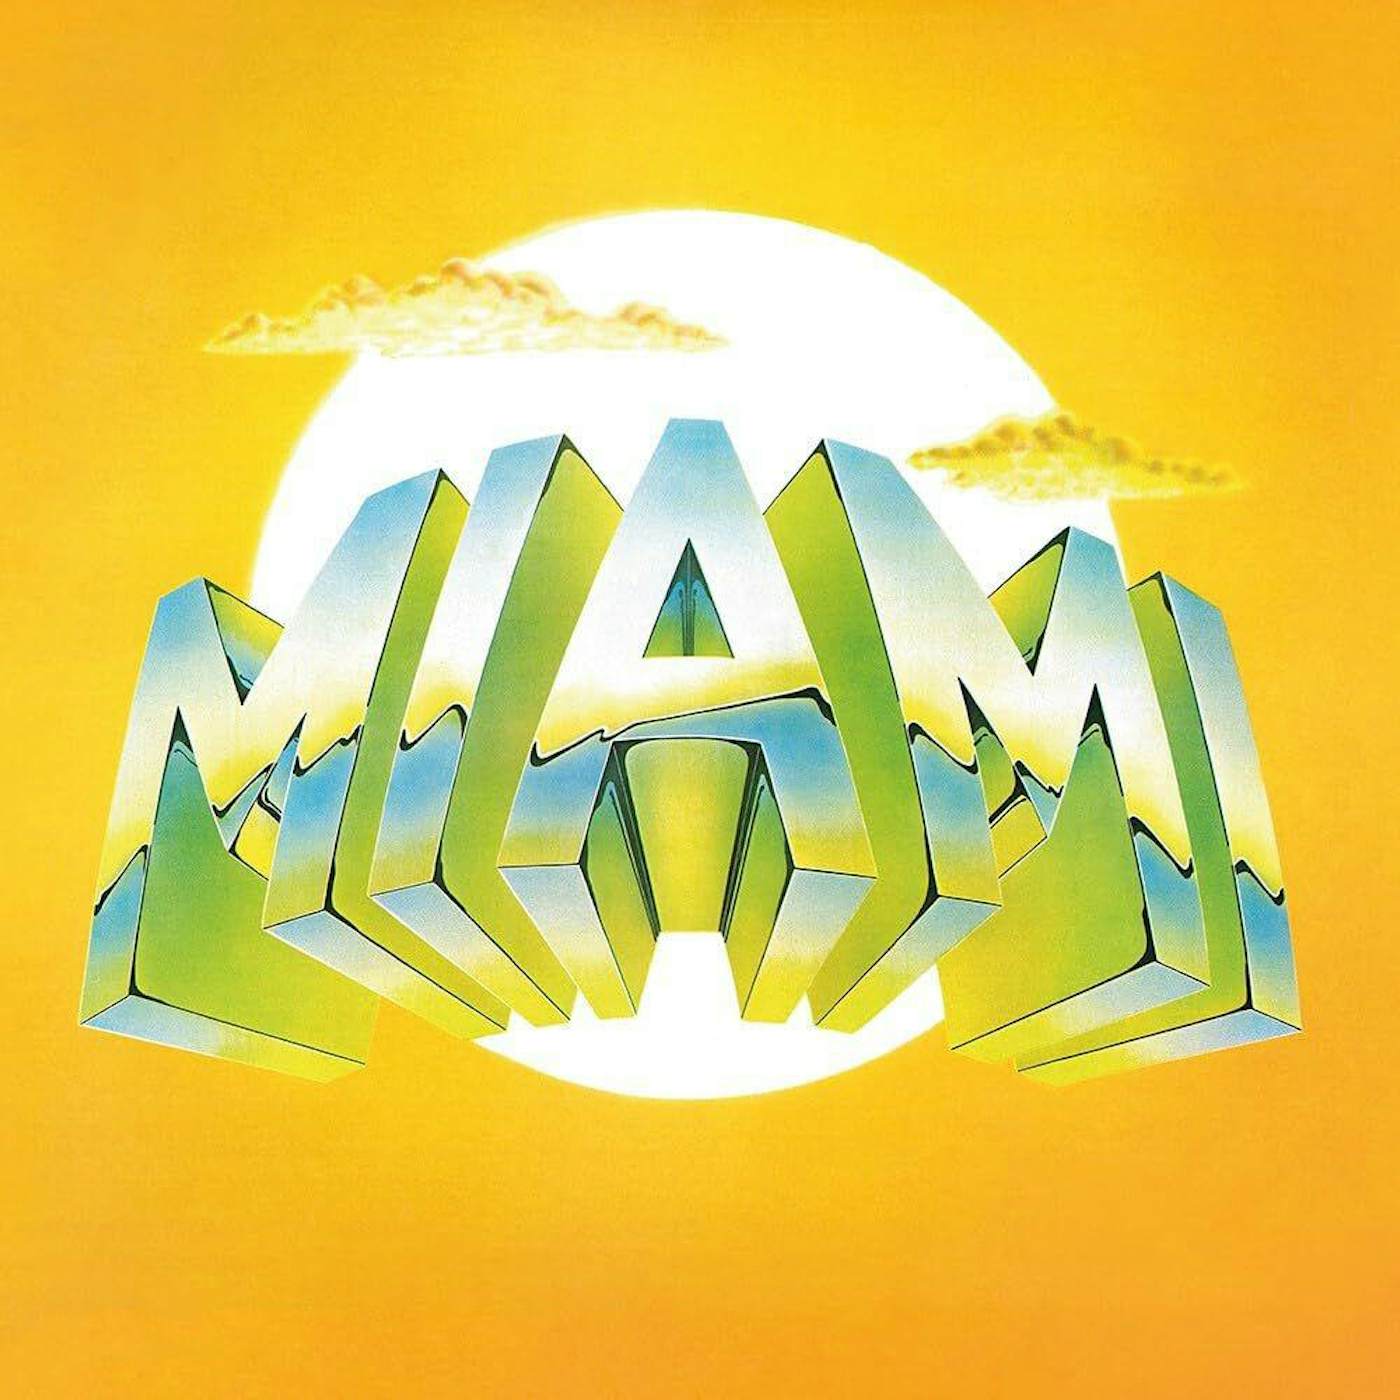  Miami S/T Vinyl Record